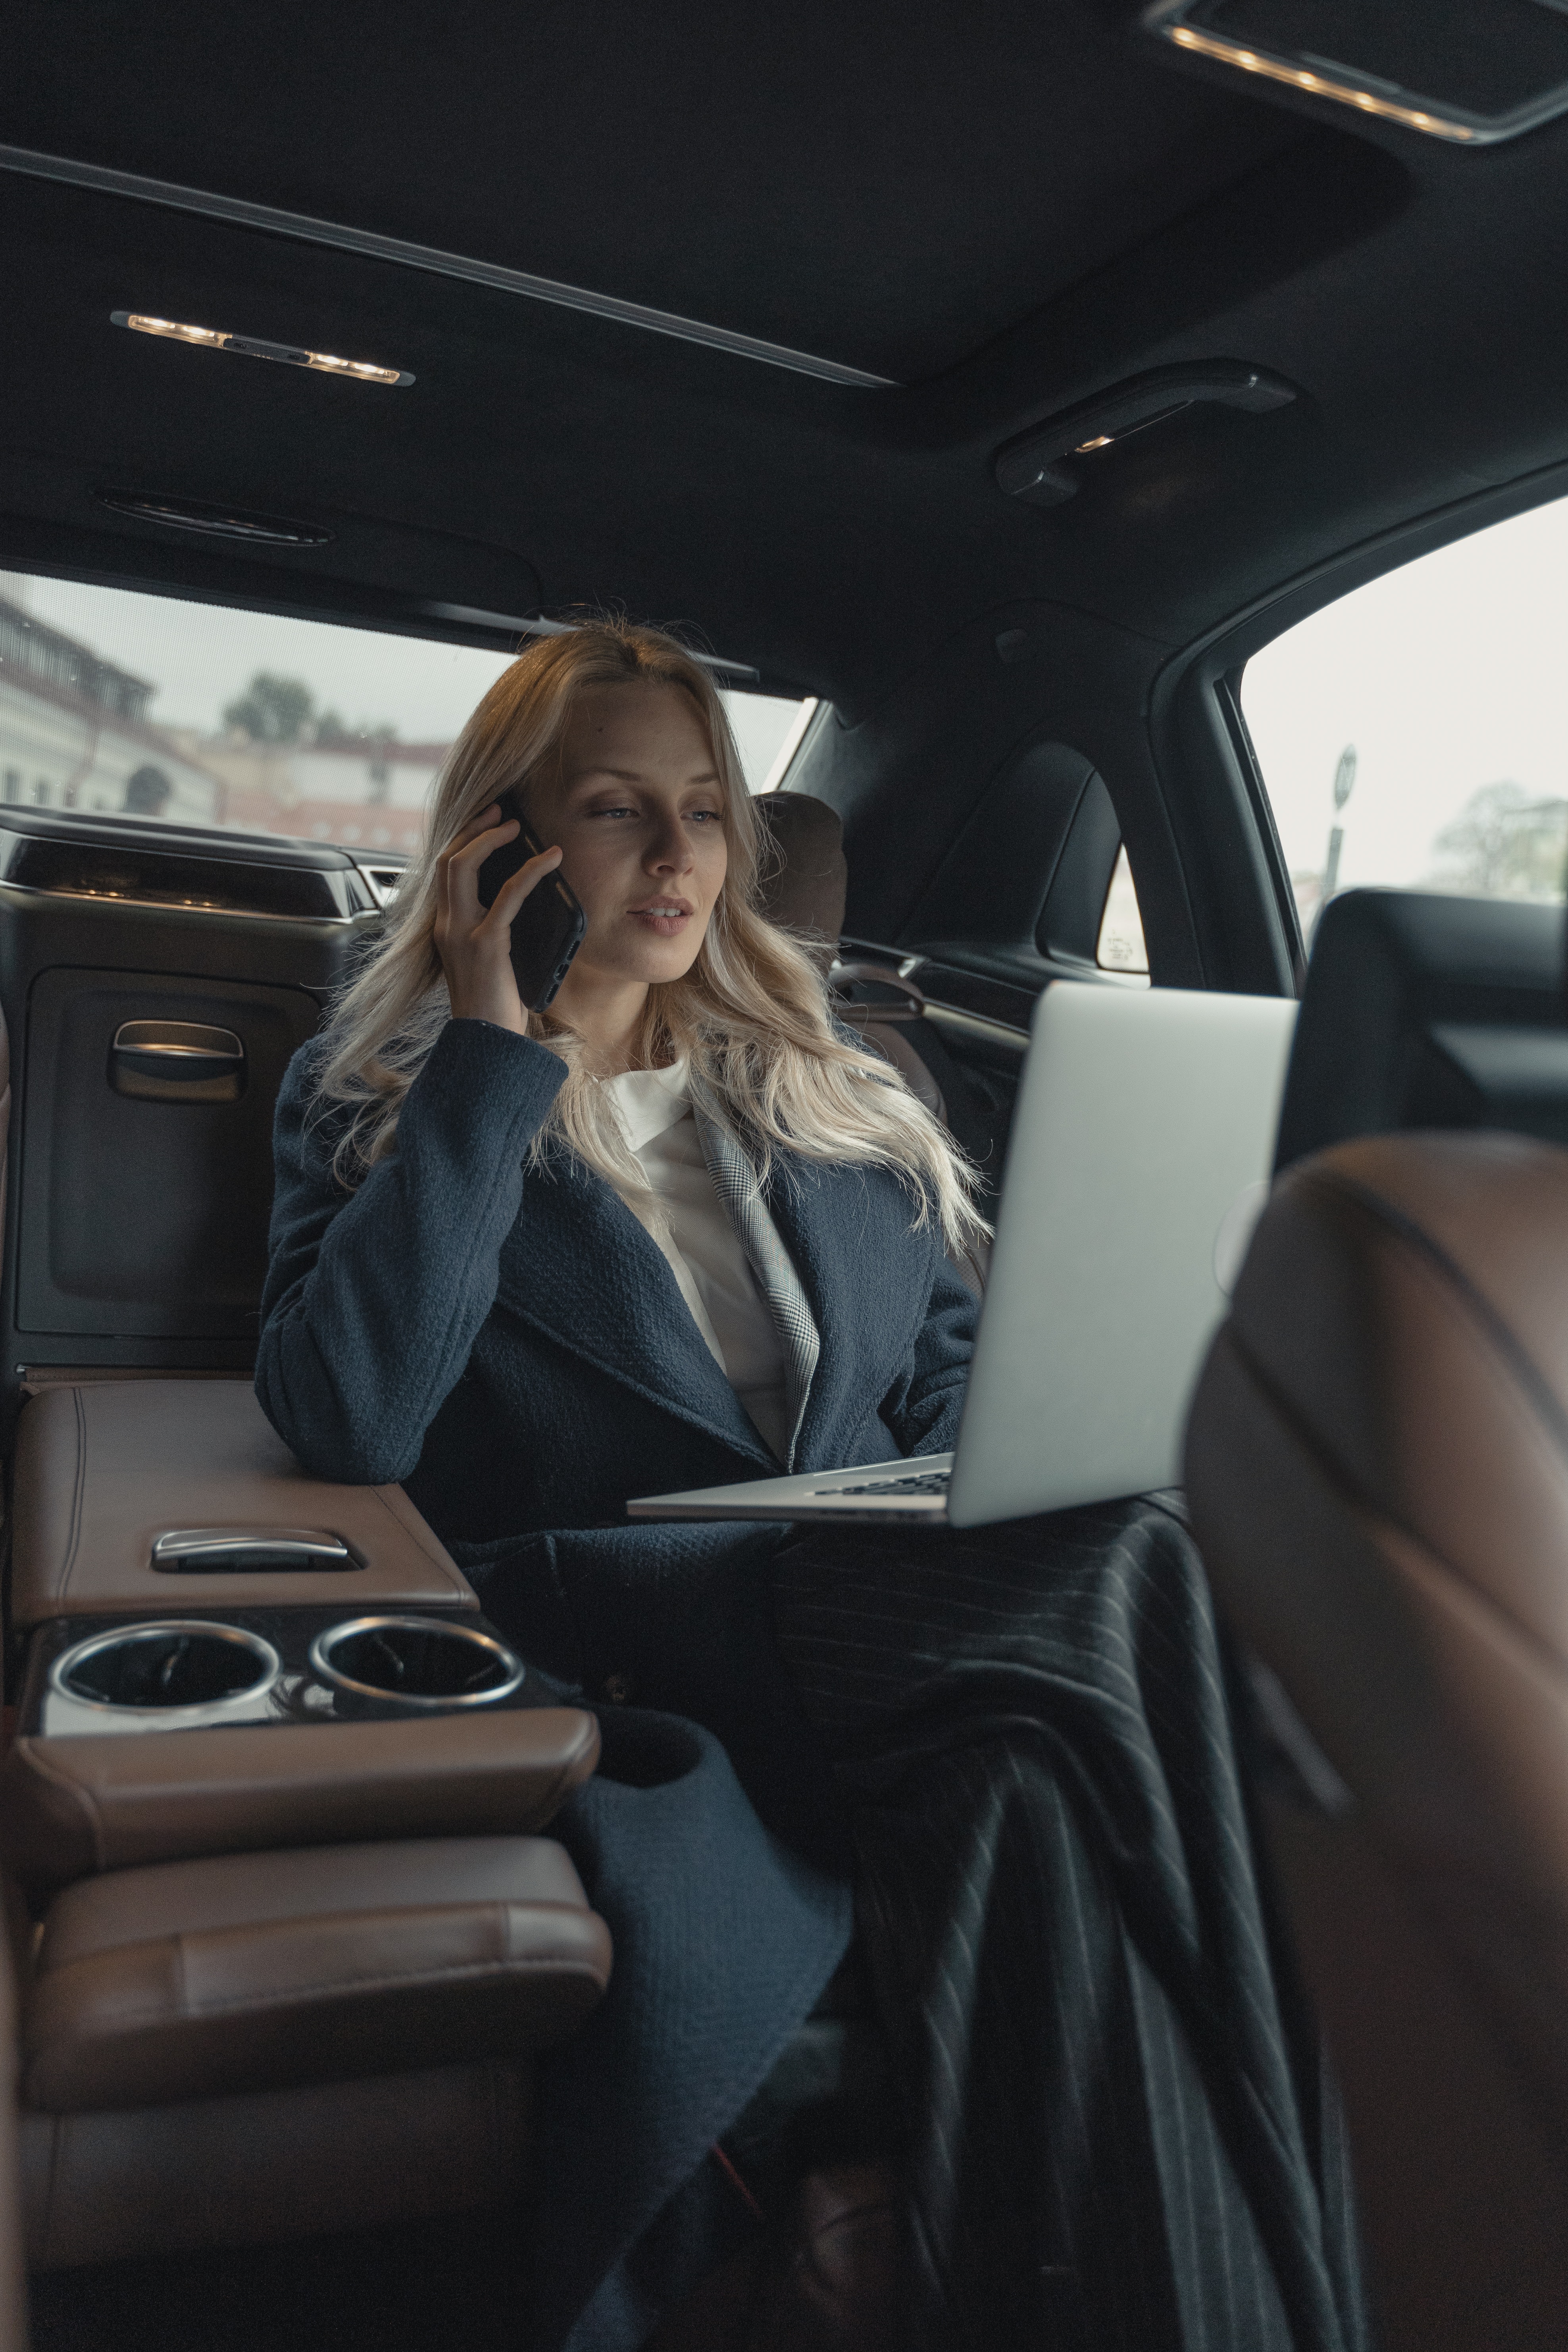 Femme dans une voiture avec son ordinateur portable et son téléphone